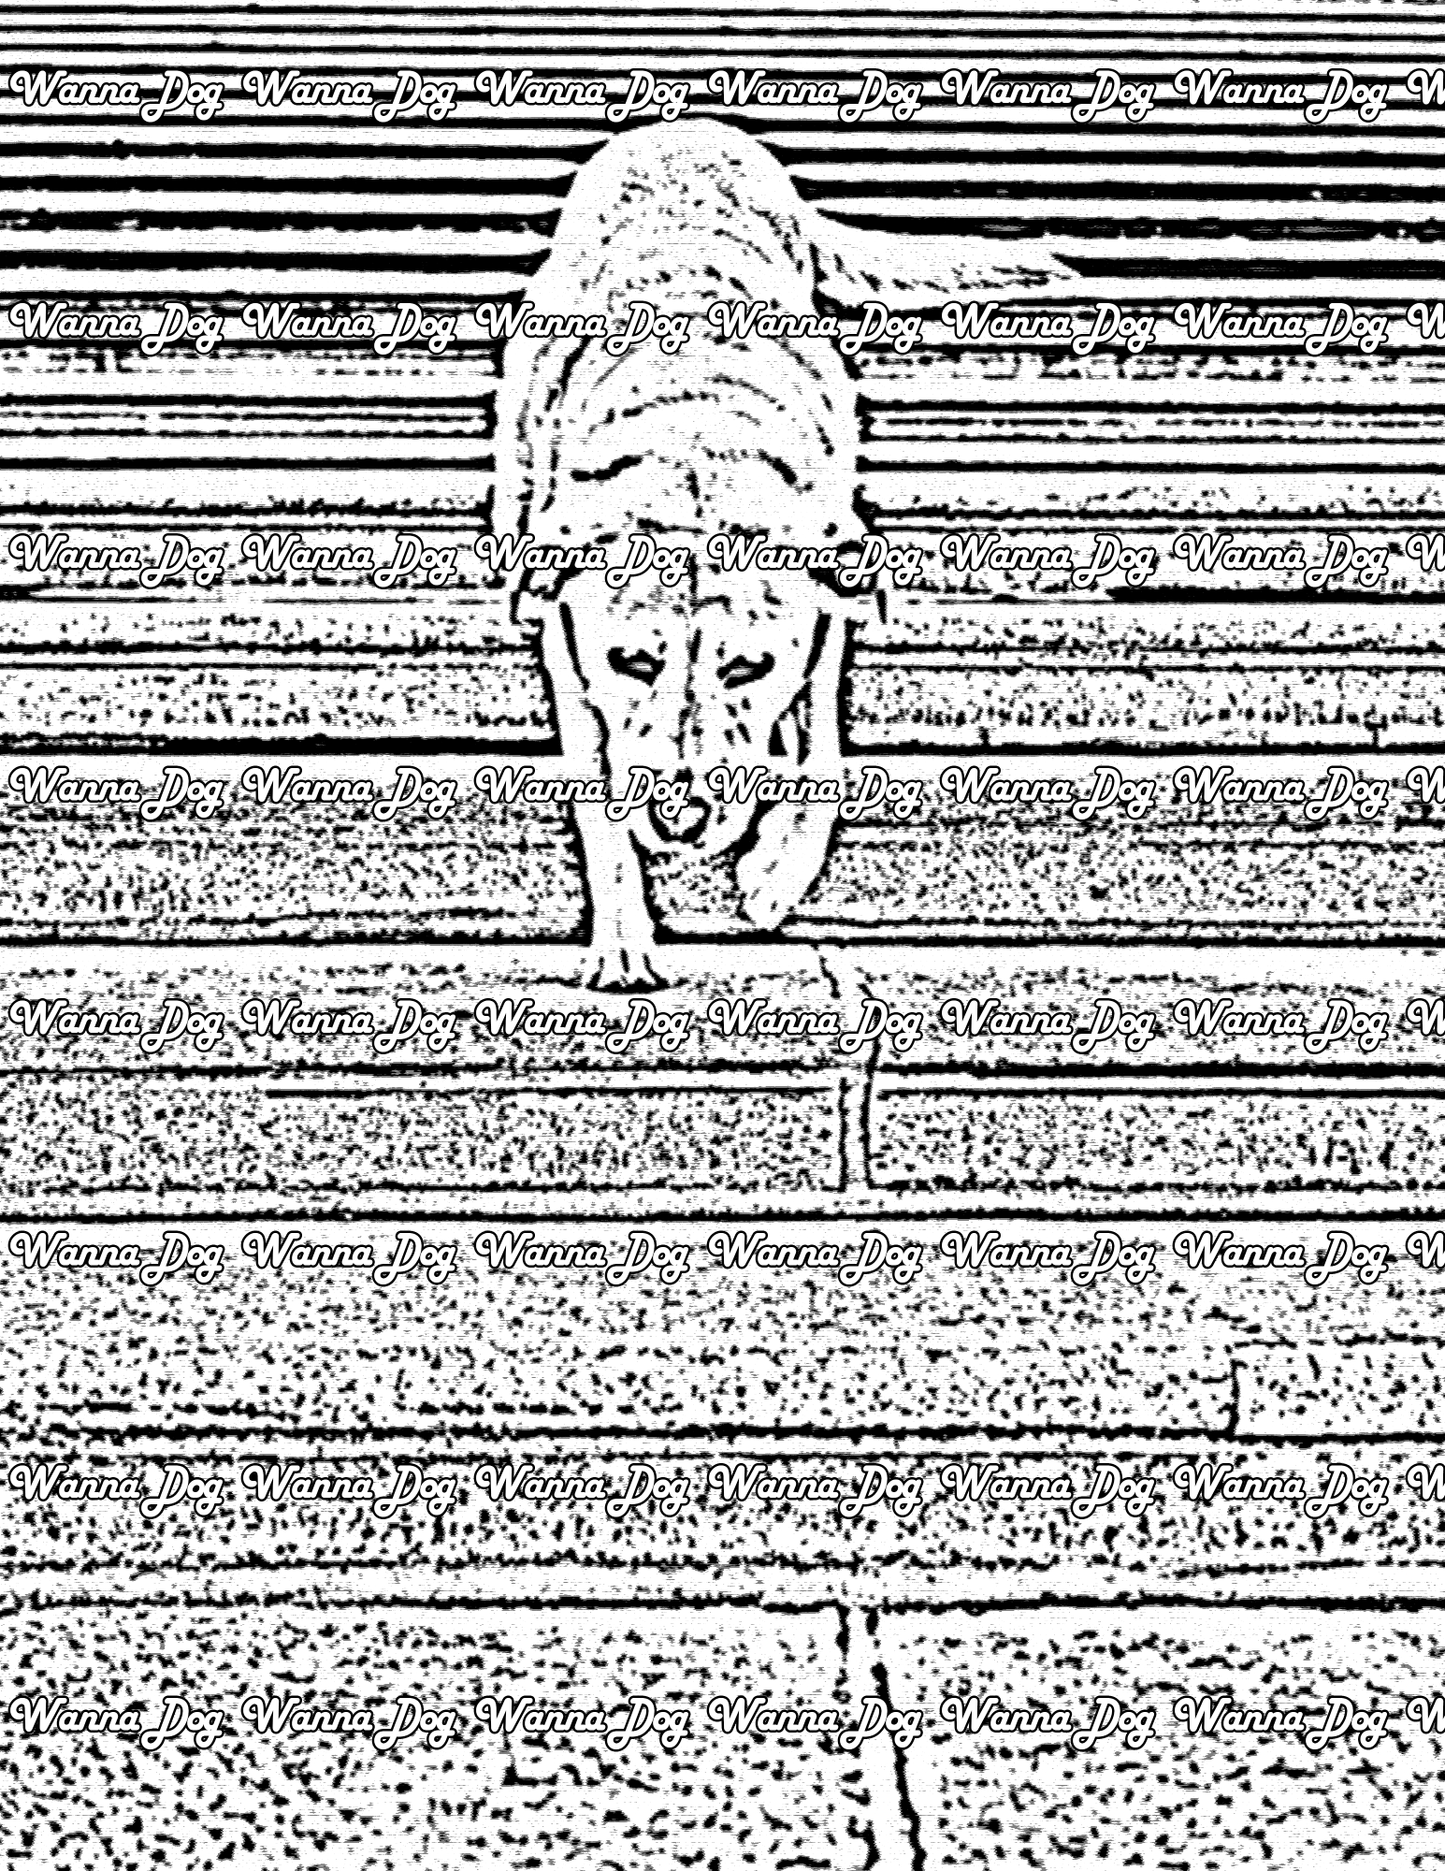 Labrador Retriever Coloring Page of a Labrador Retriever walking down some steps